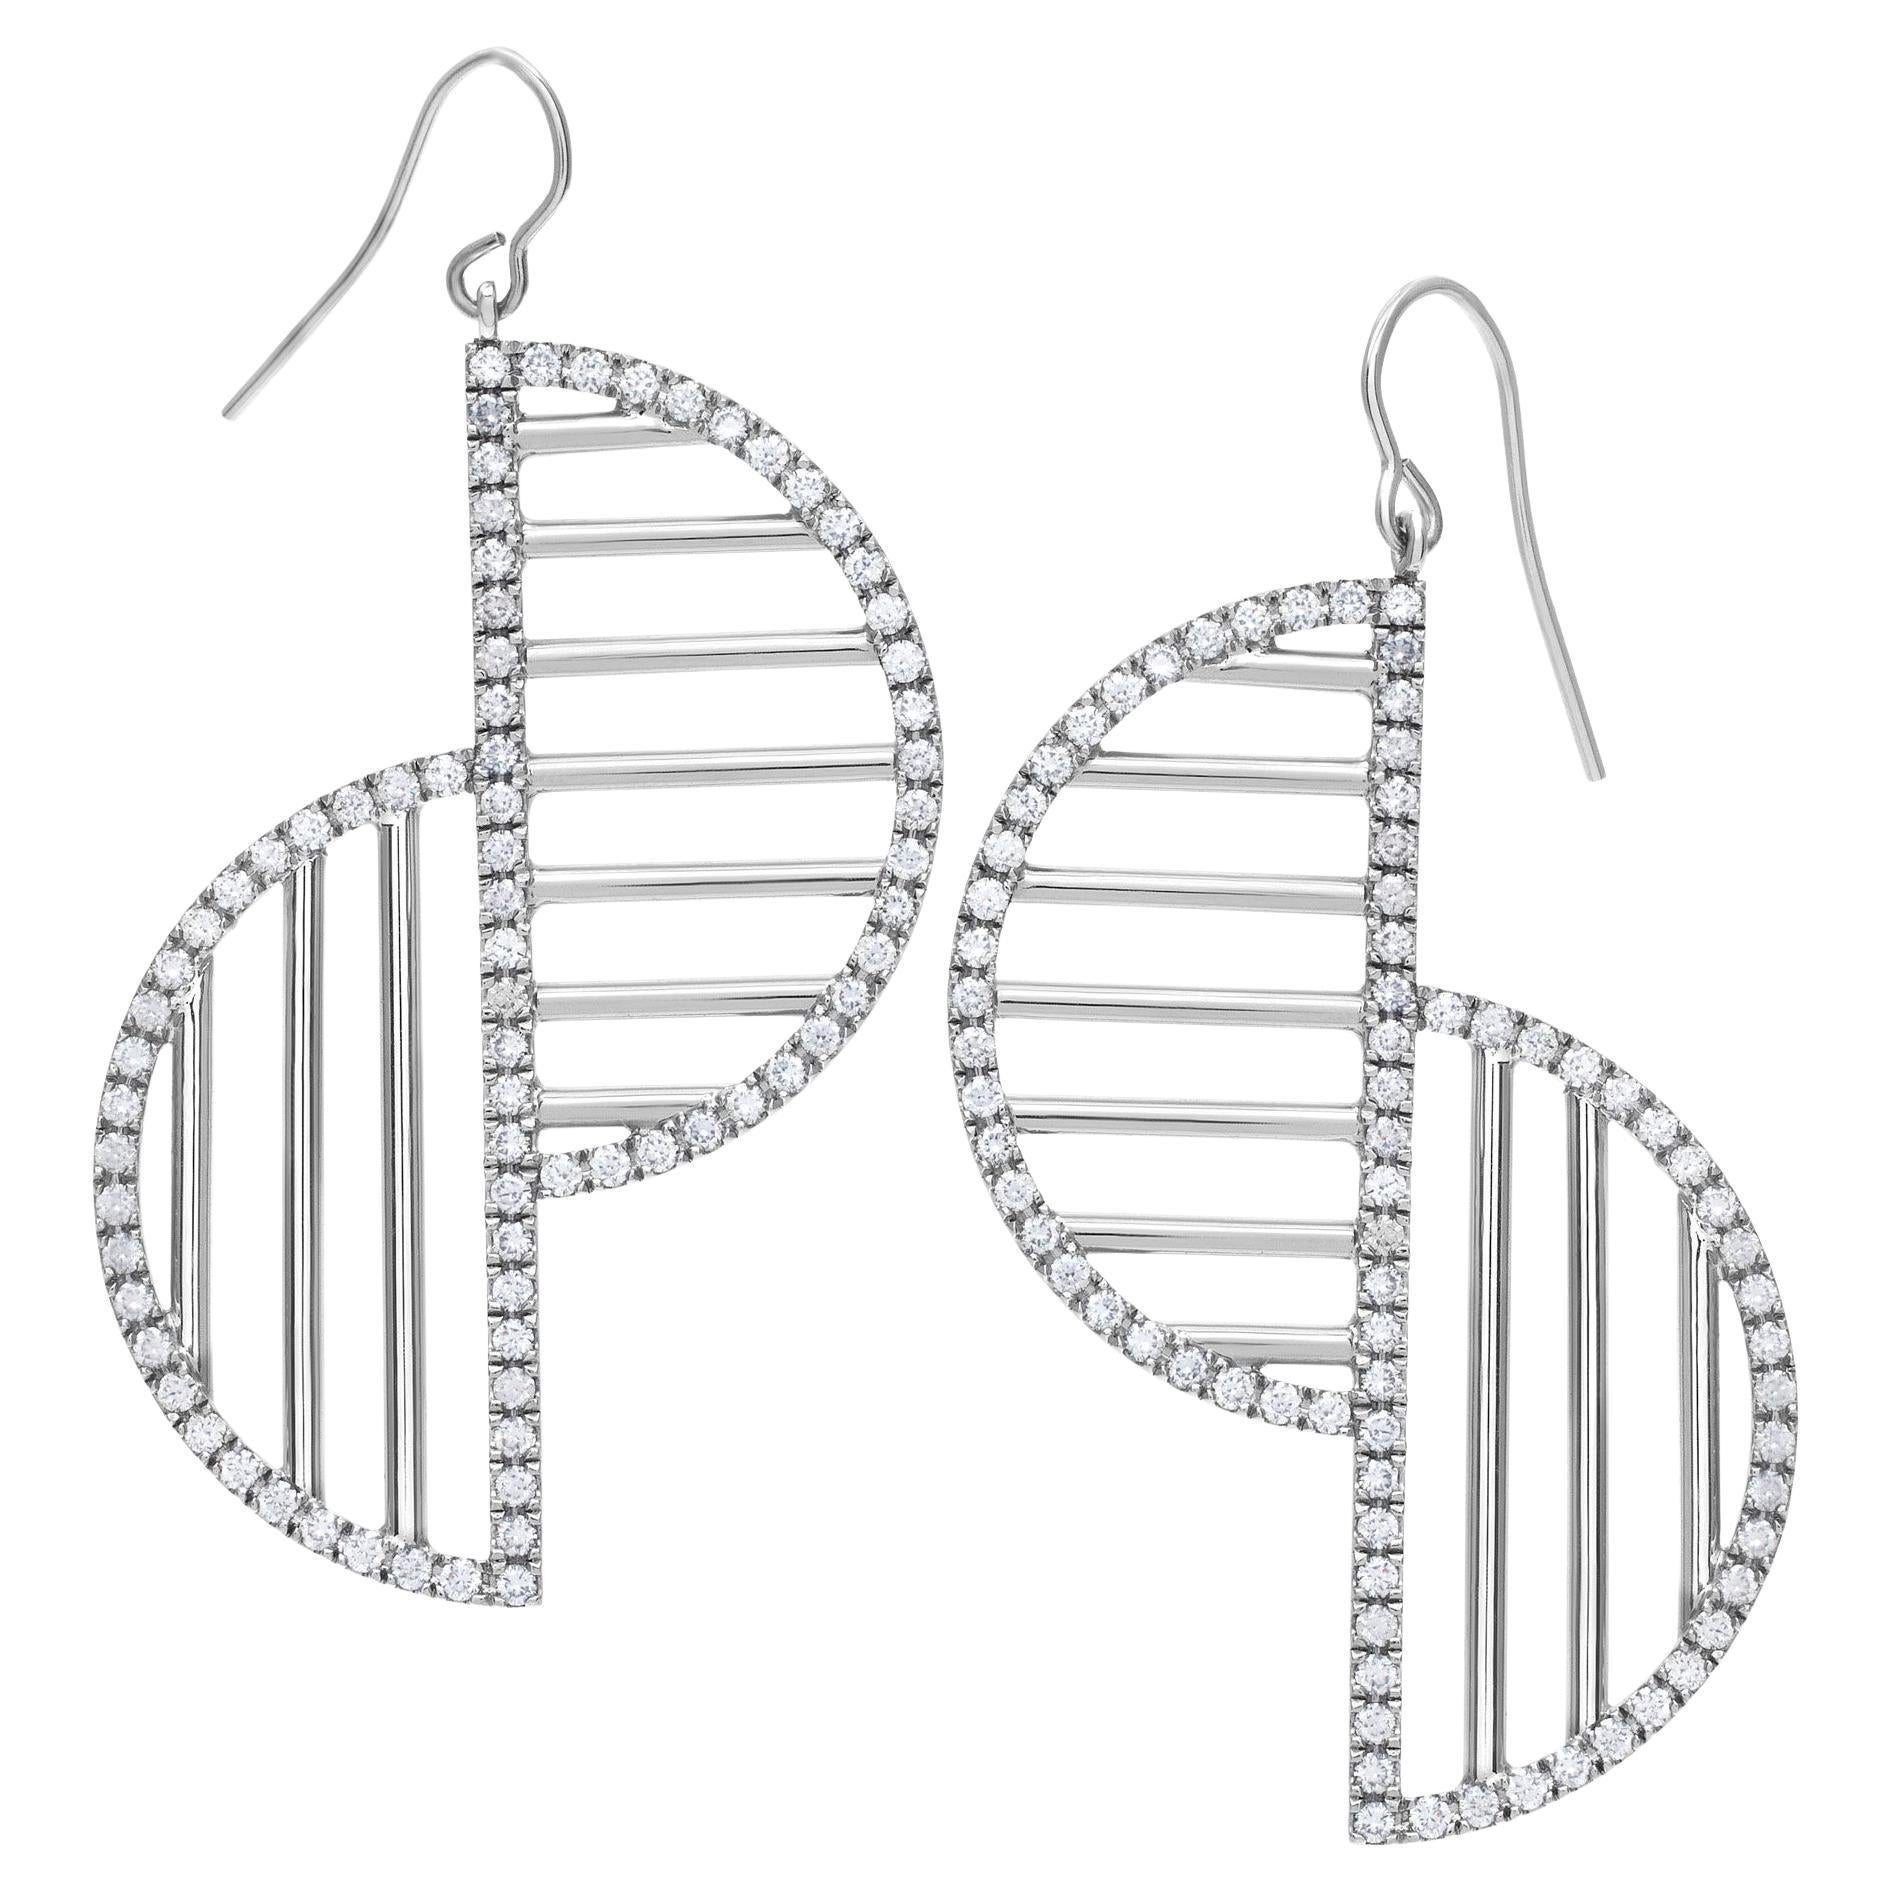 Geometry and Motion Custom Designed Diamond Earrings in 18k White Gold For Sale